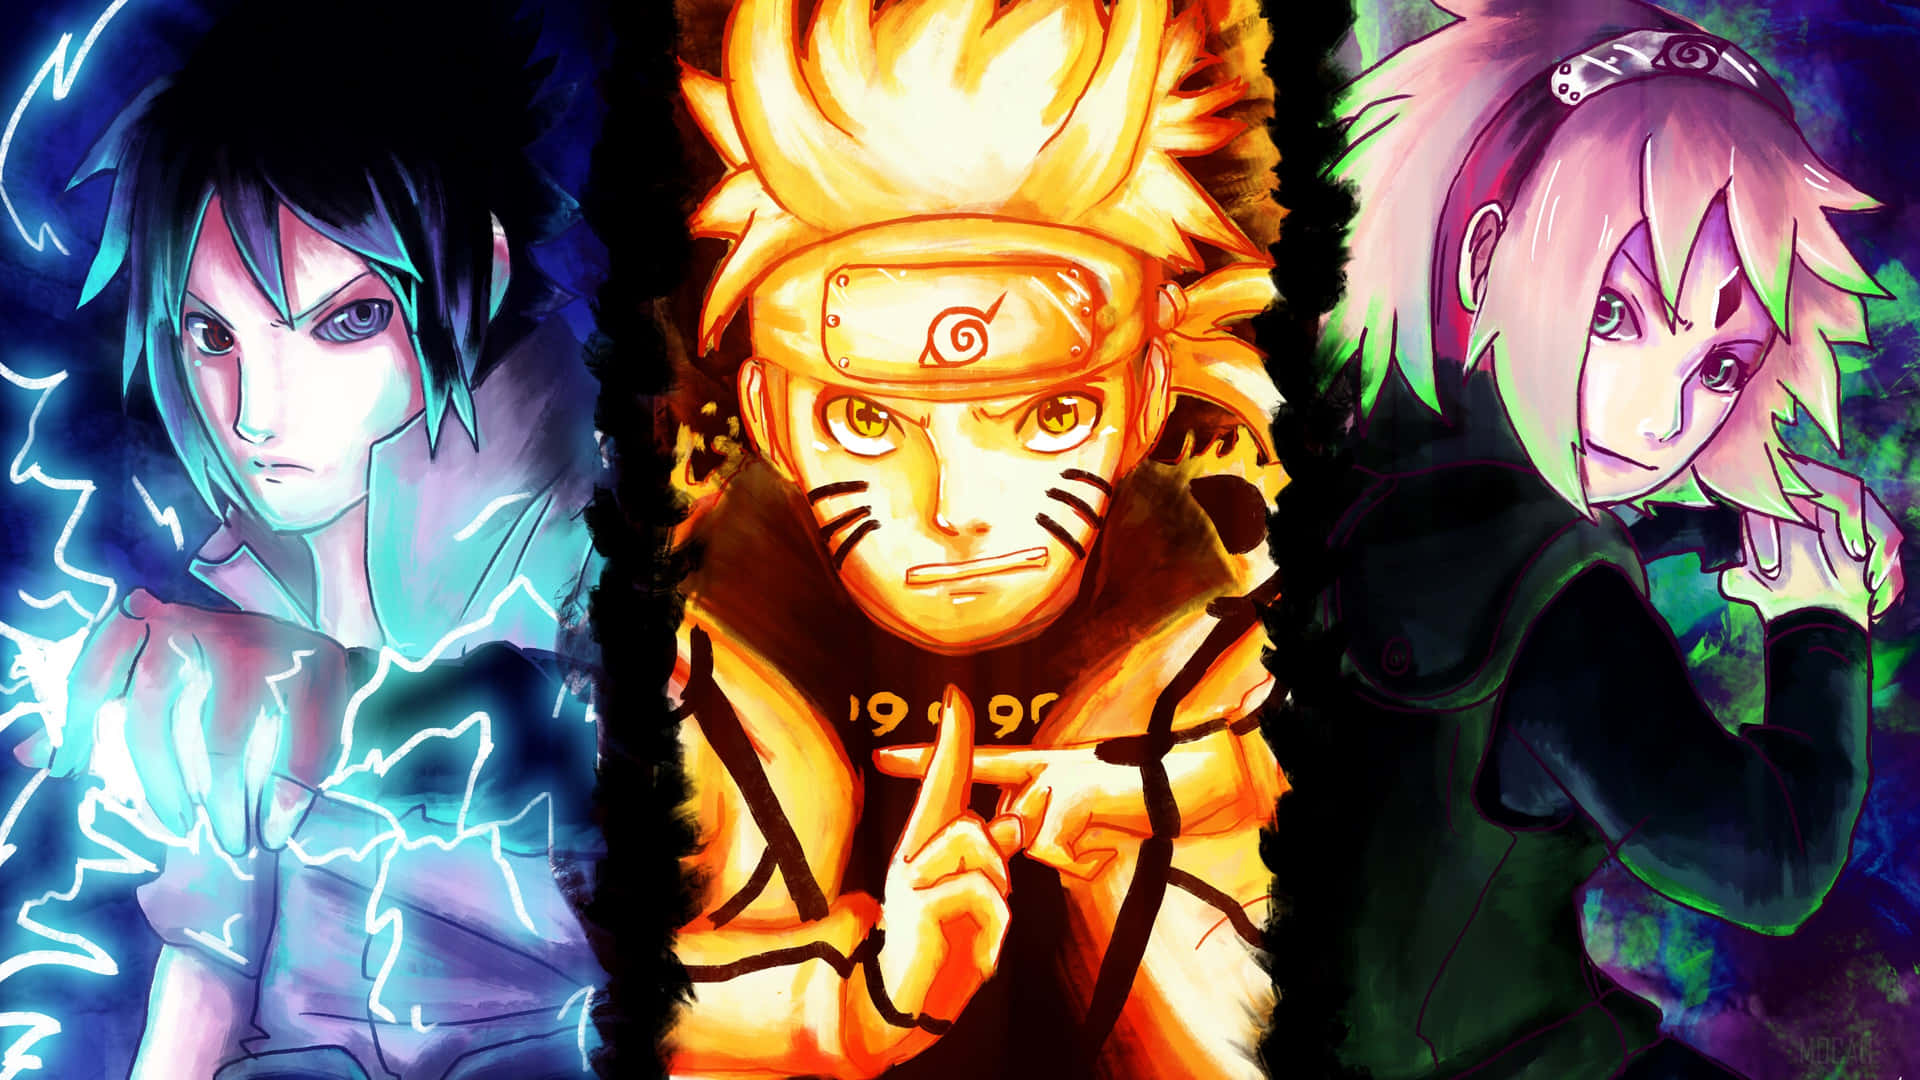 Naruto Uzumaki & Wallpaper: Naruto - một trong những bộ Anime nổi tiếng nhất của thế giới. Nhân vật chính Uzumaki Naruto đã trở thành biểu tượng của sự kiên trì và đam mê. Những hình nền với hình ảnh của Naruto sẽ đưa bạn đến những trải nghiệm đầy cảm xúc, kích thích sự sáng tạo và động viên bạn không ngừng phấn đấu. Hãy xem ngay bộ sưu tập hình nền Naruto của chúng tôi để tìm được bức tranh ưng ý nhất.